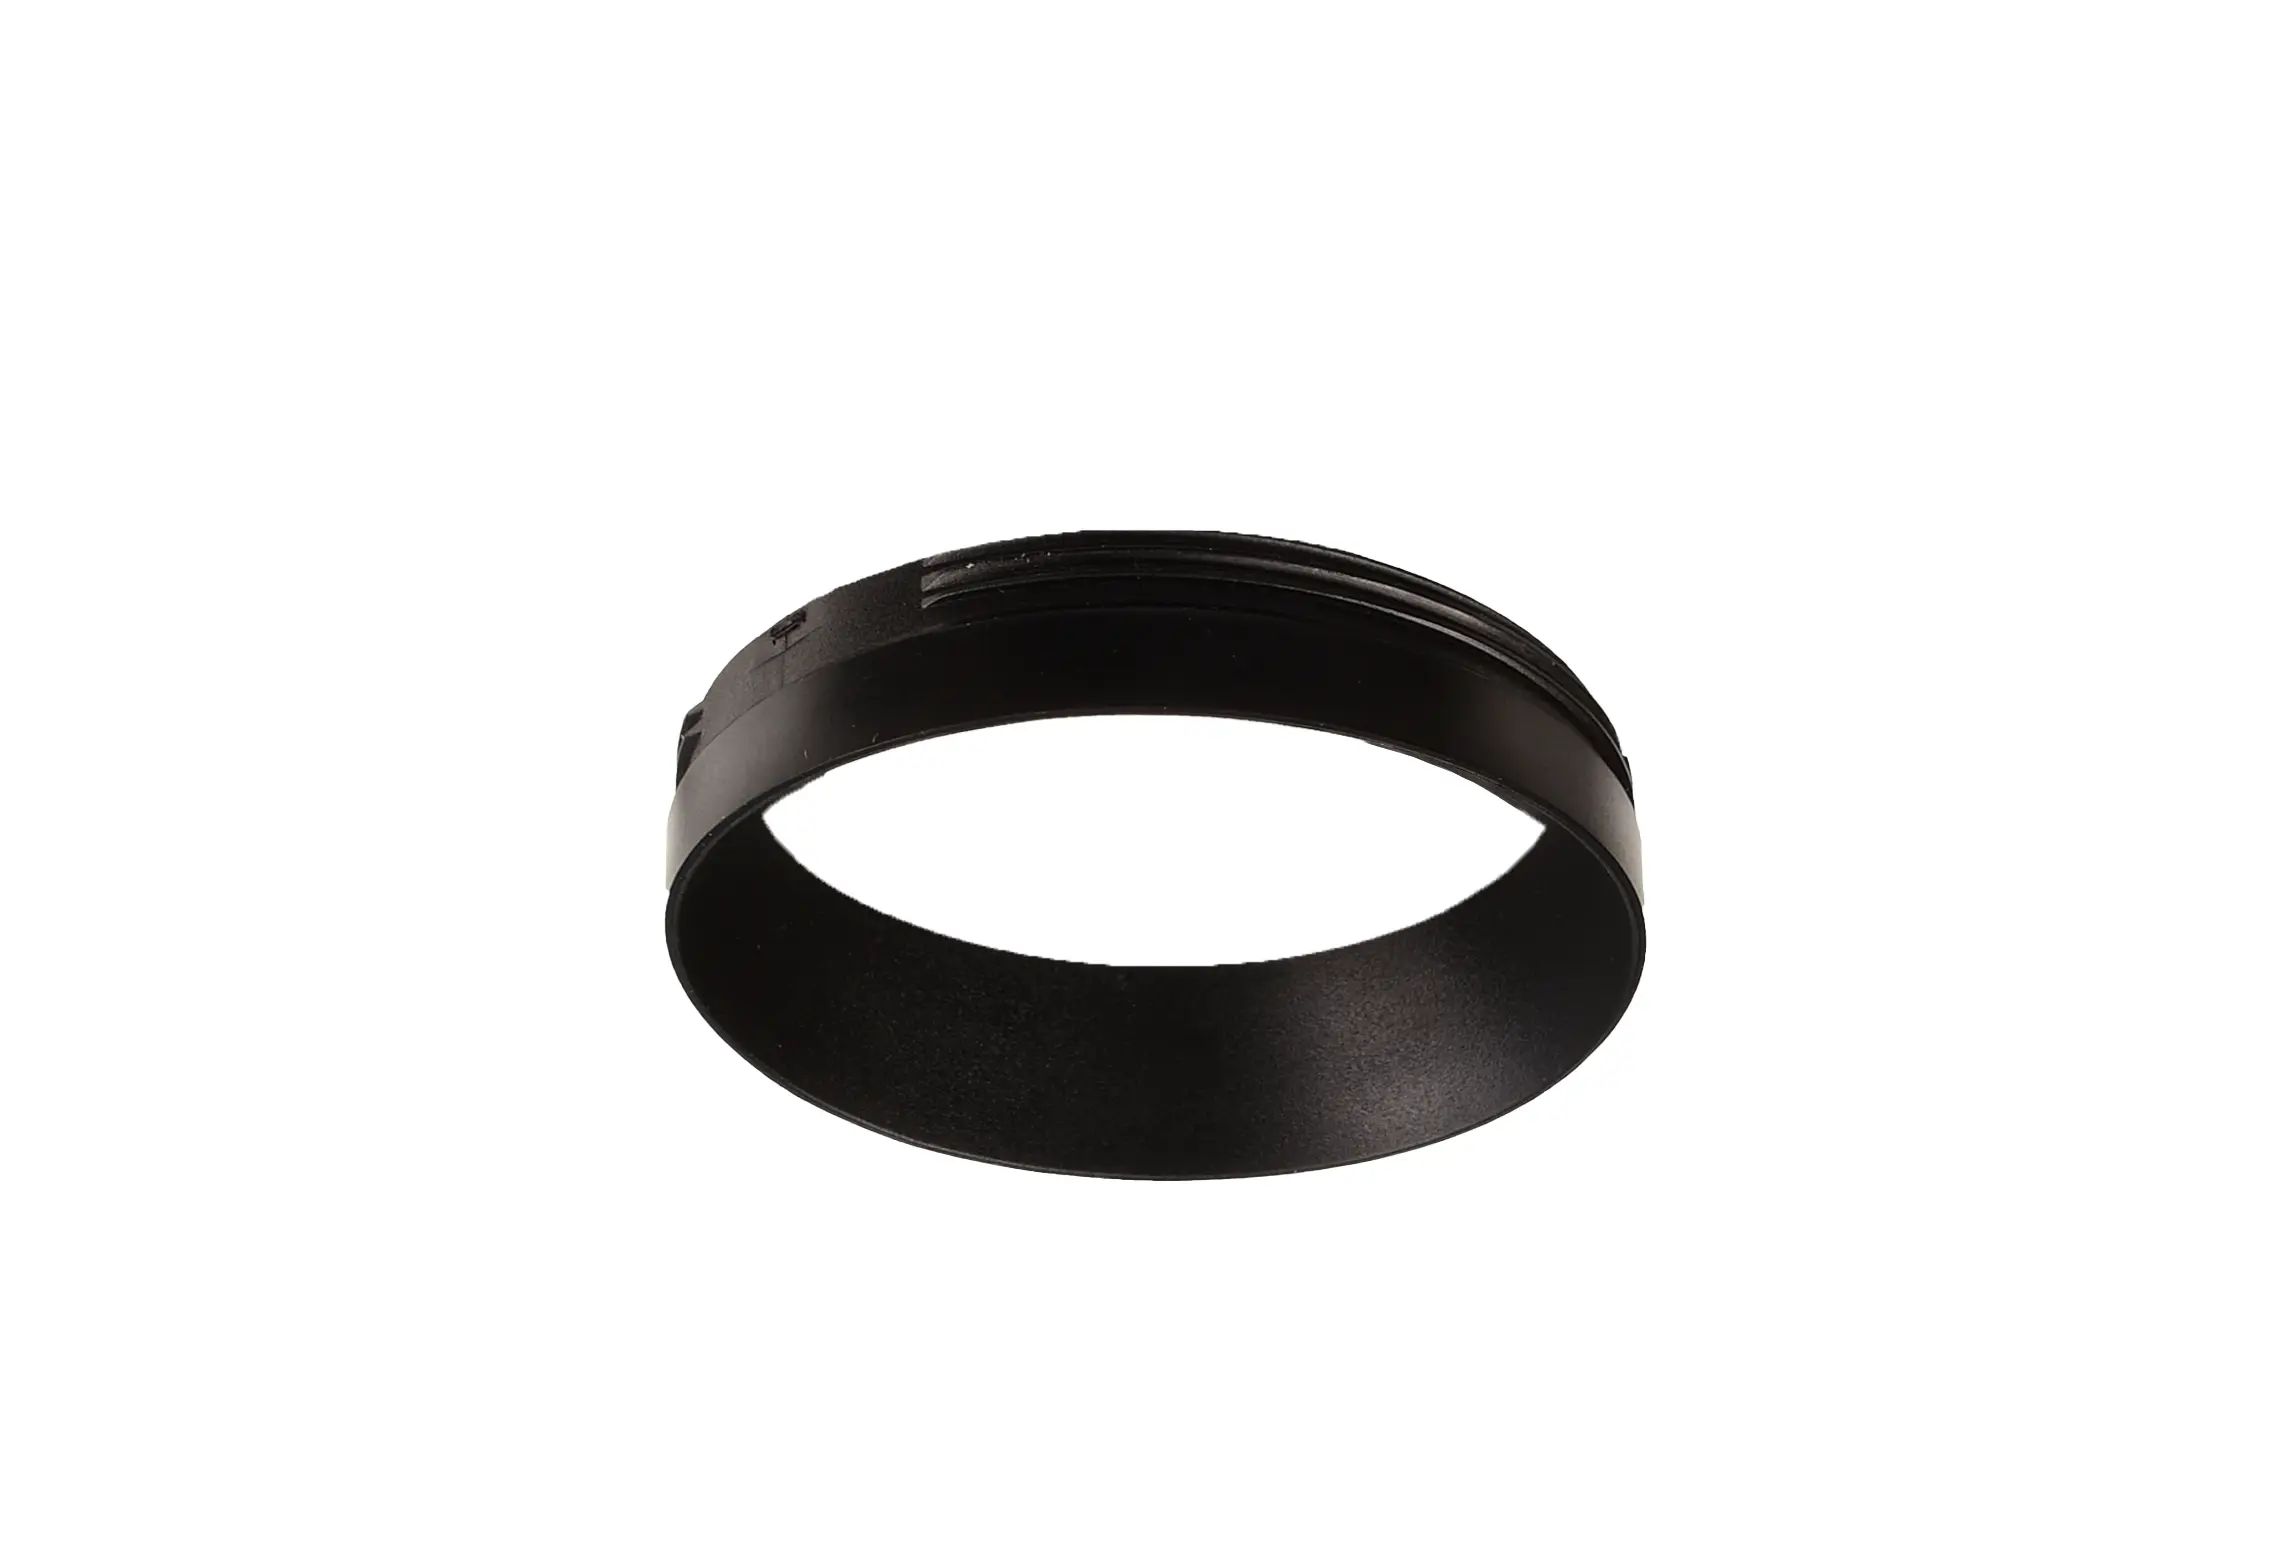 Reflektor Ring schwarz für Serie Slim